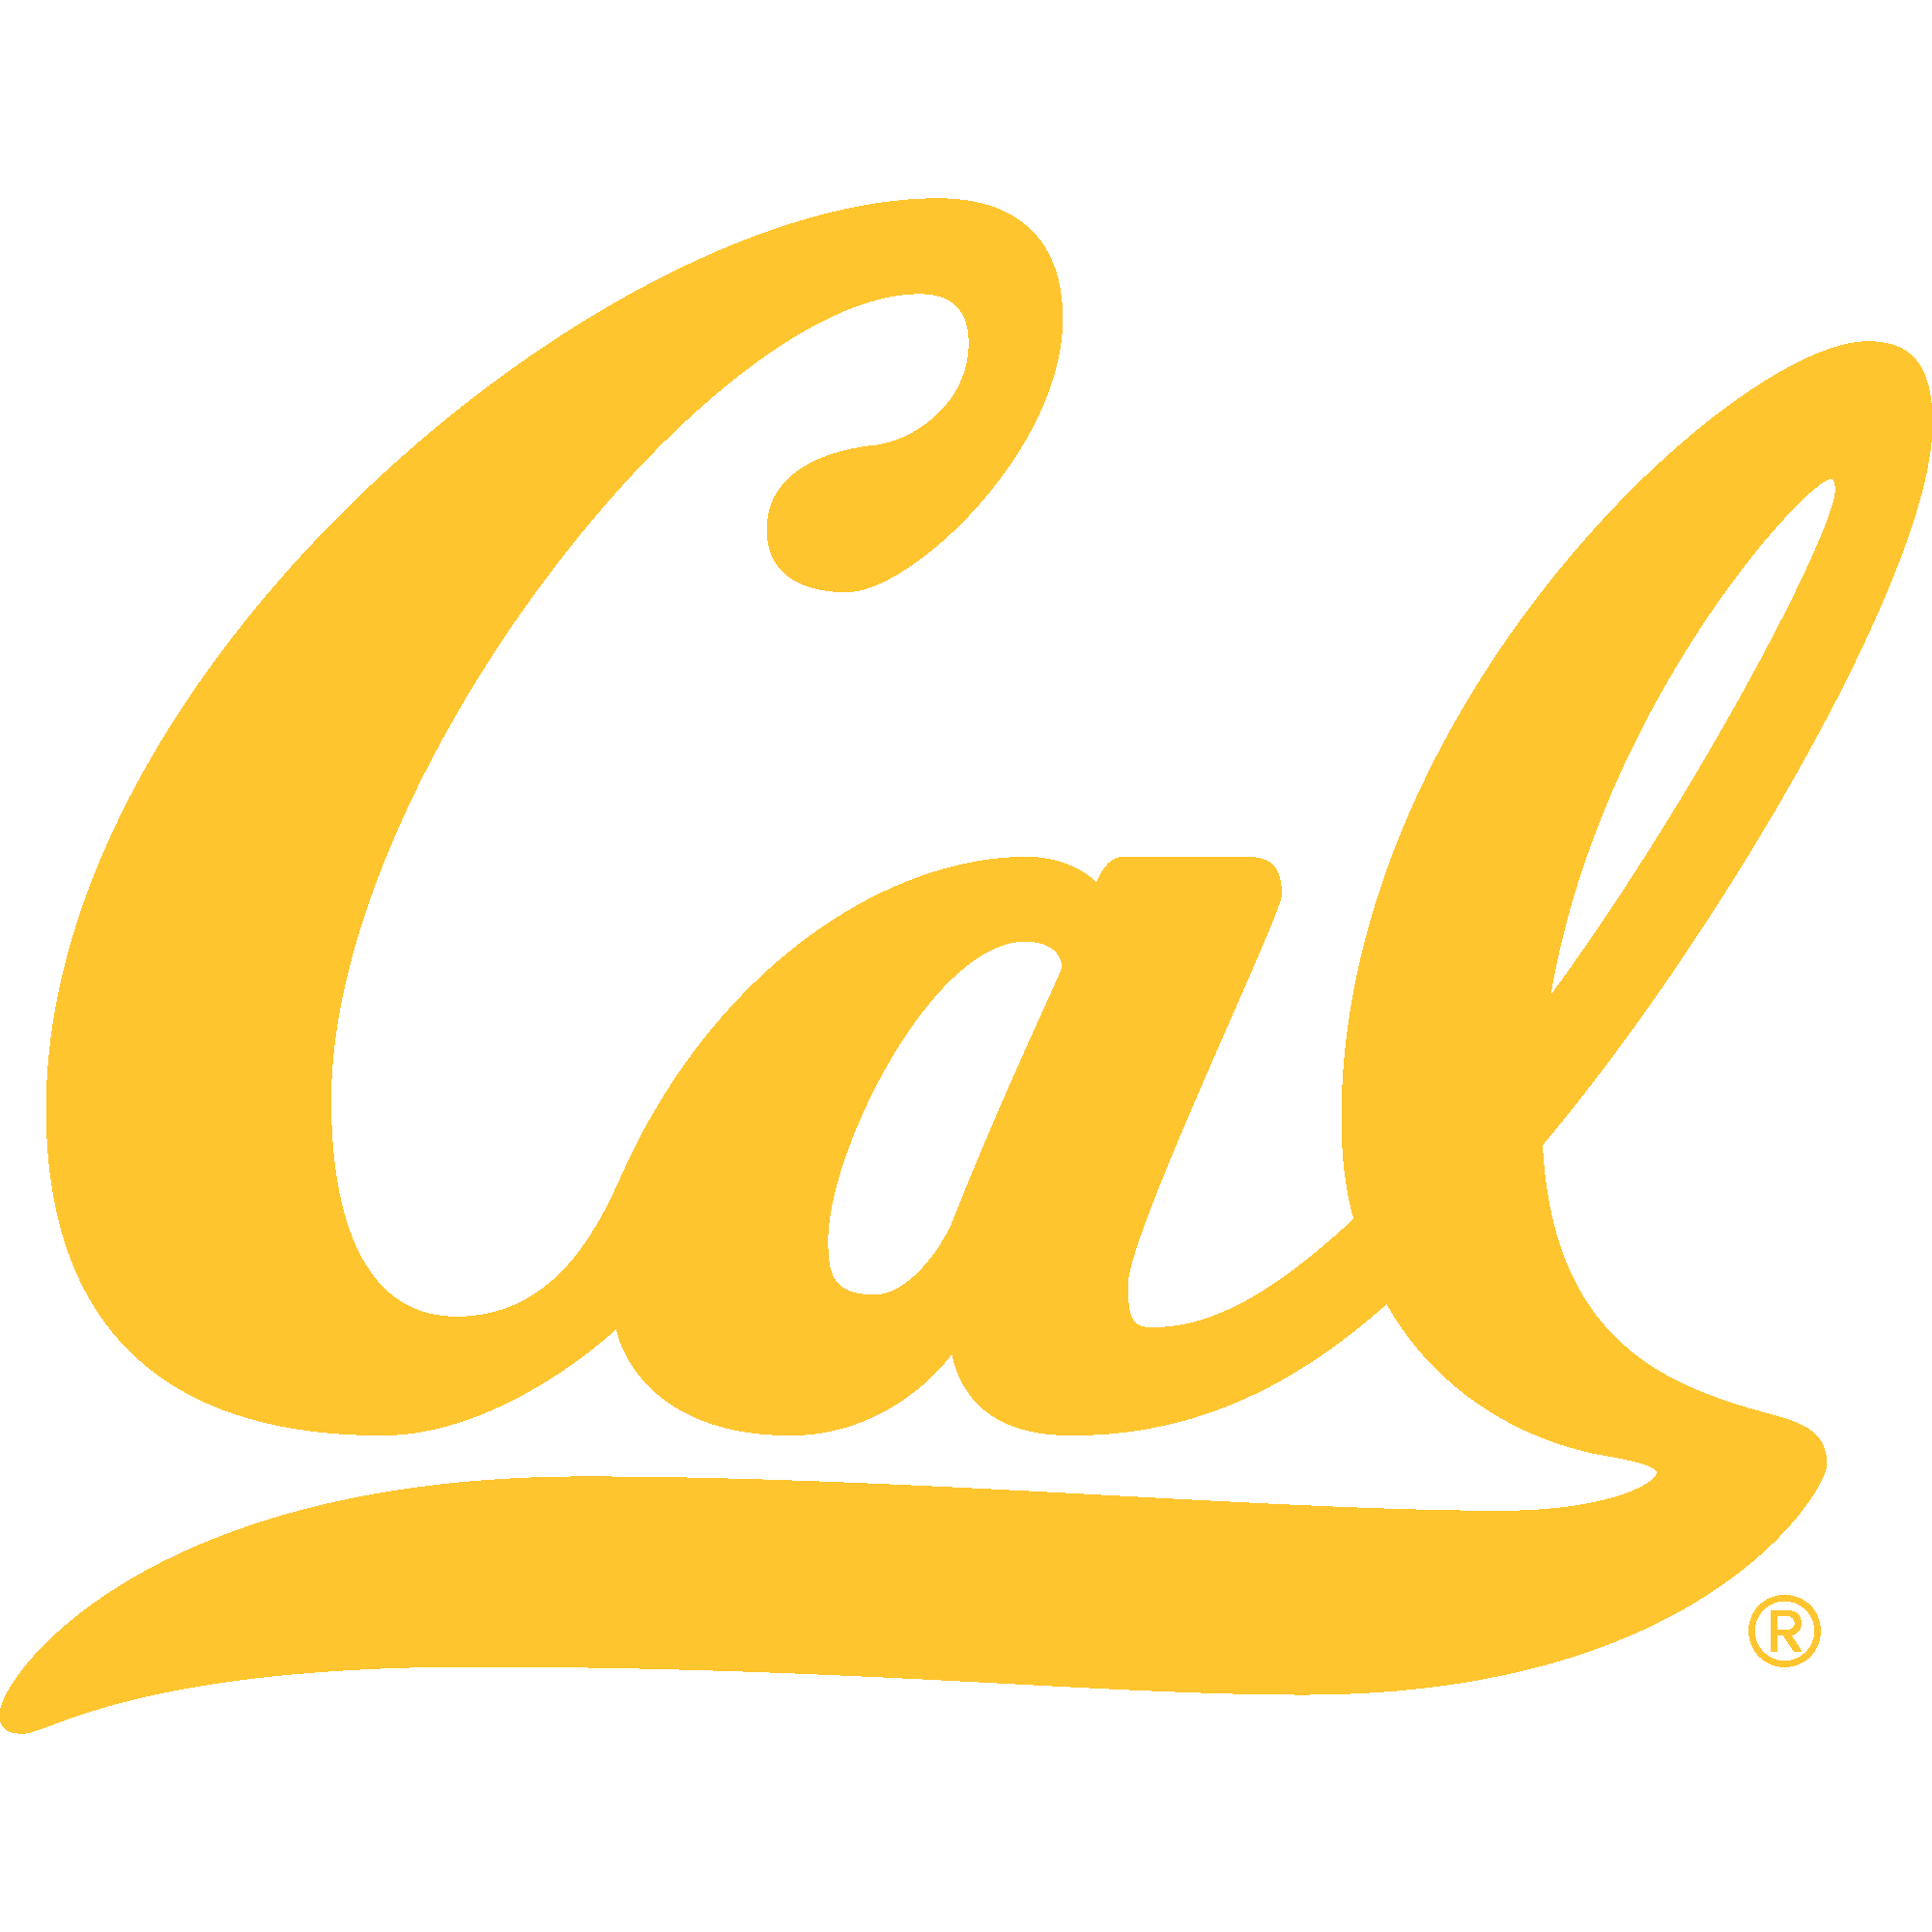 University of California Golden Bears